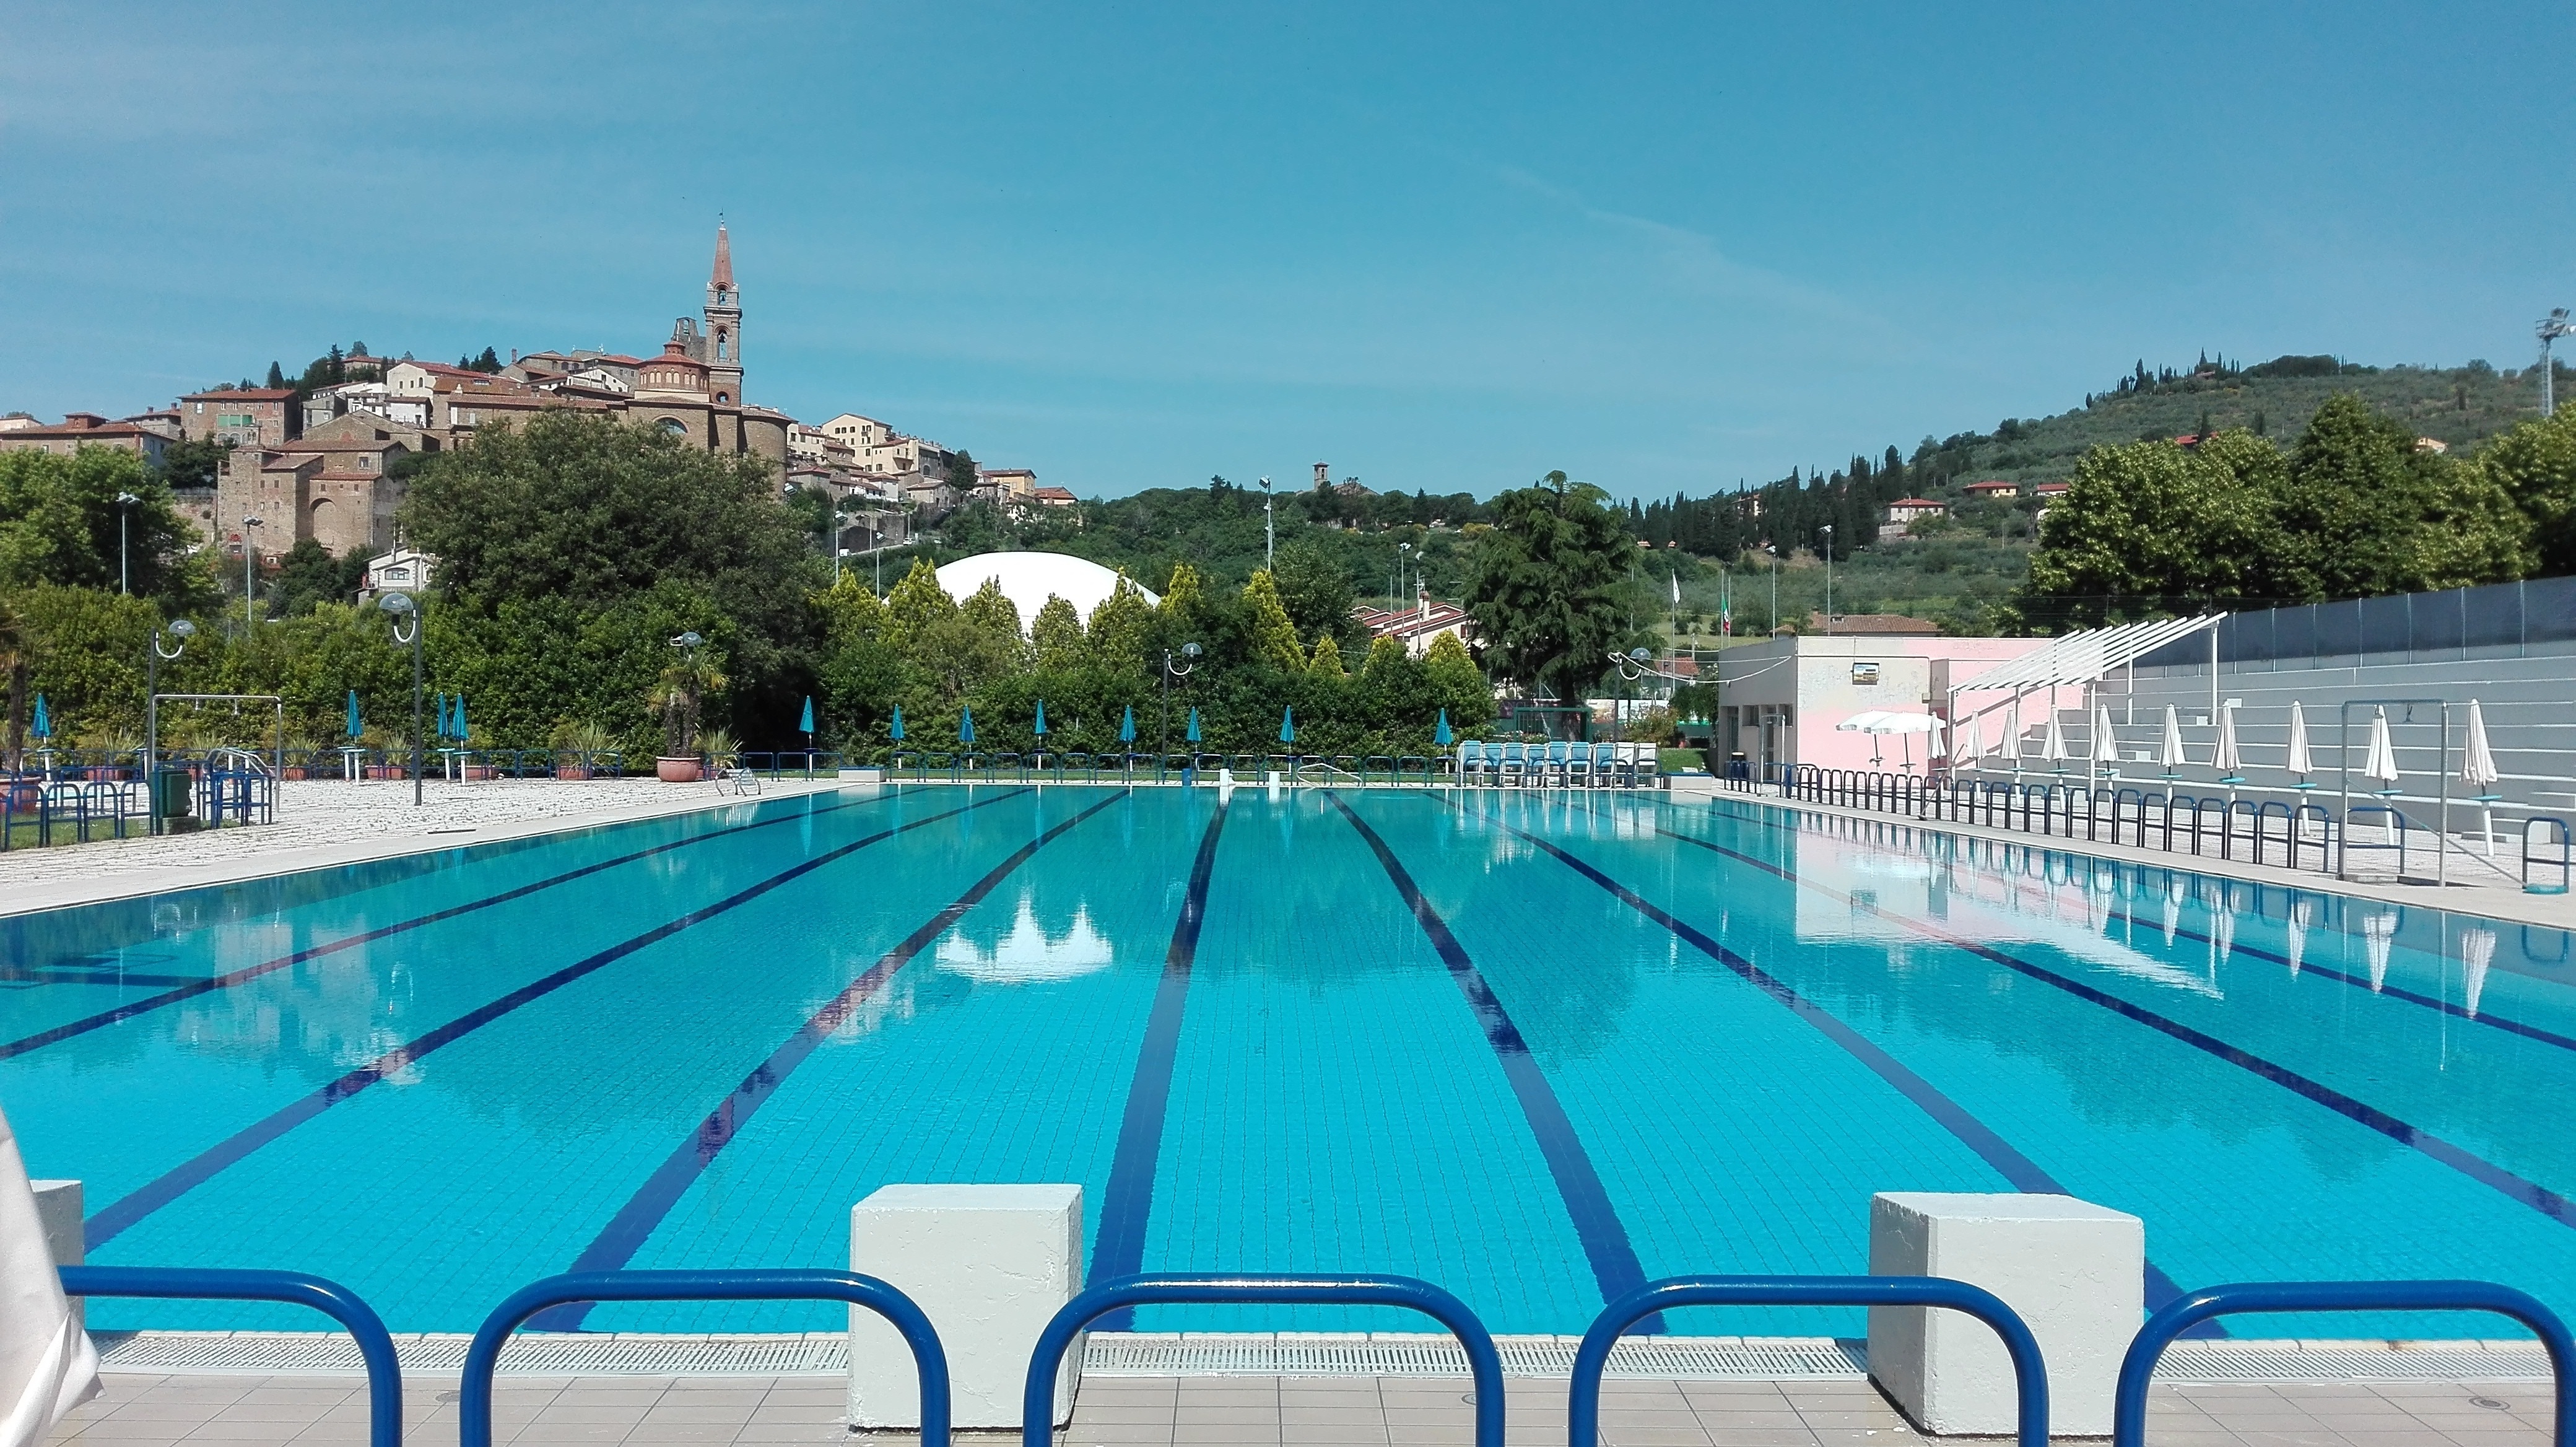 Sabato 8 giugno riprende l’attività della piscina comunale di Castiglion Fiorentino